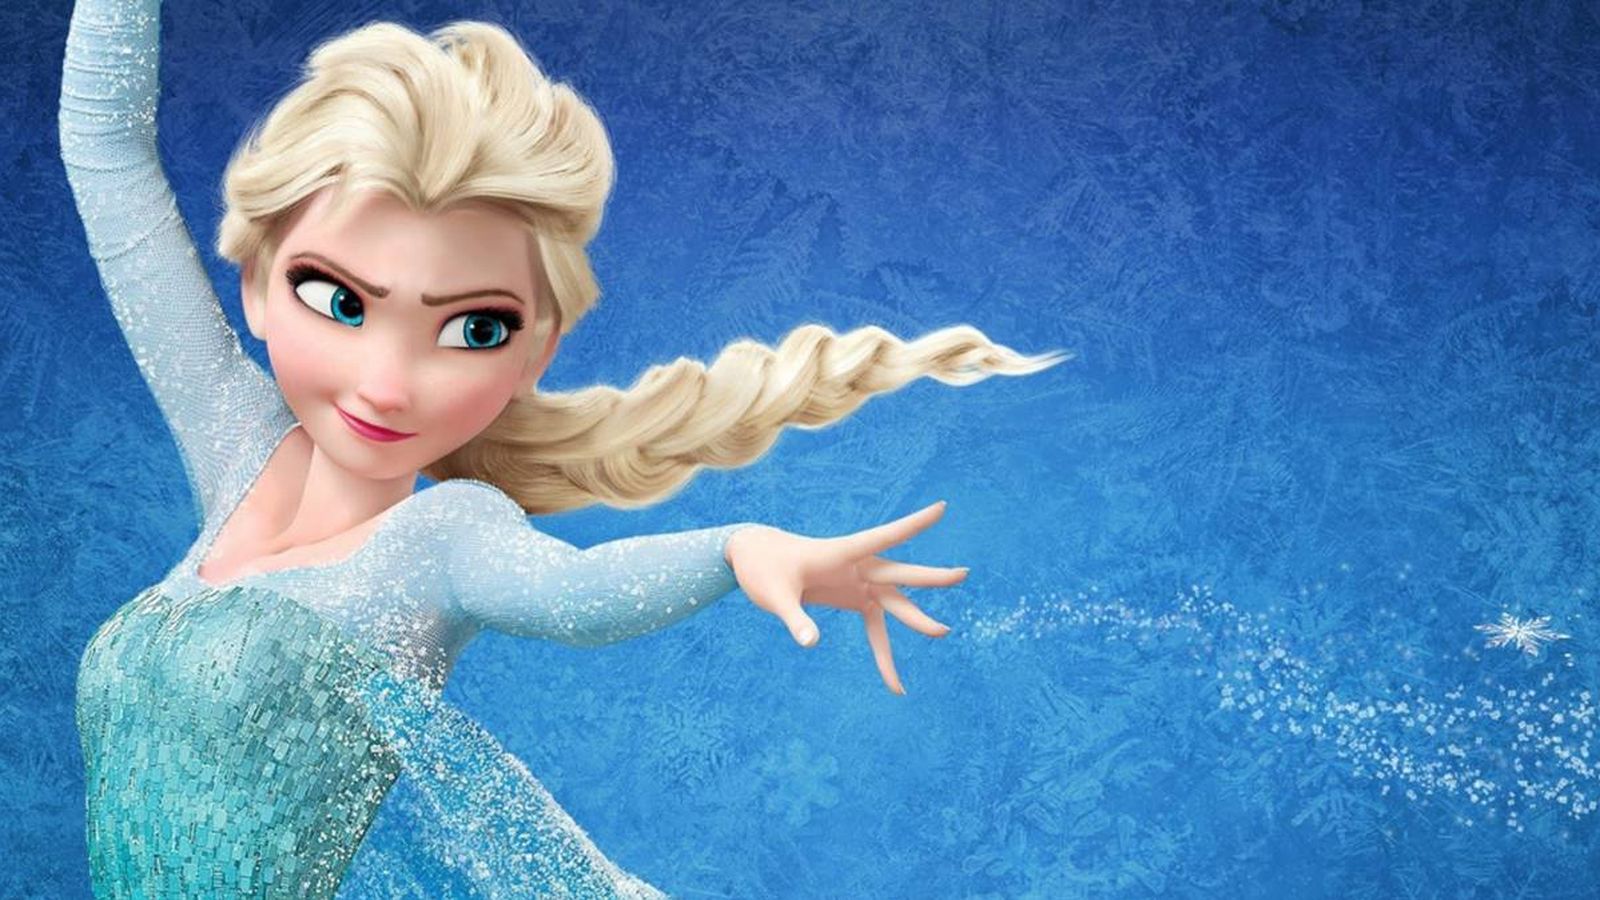 Foto: 'Frozen' una historia que llega al corazón de pequeños y grandes. (Disney)